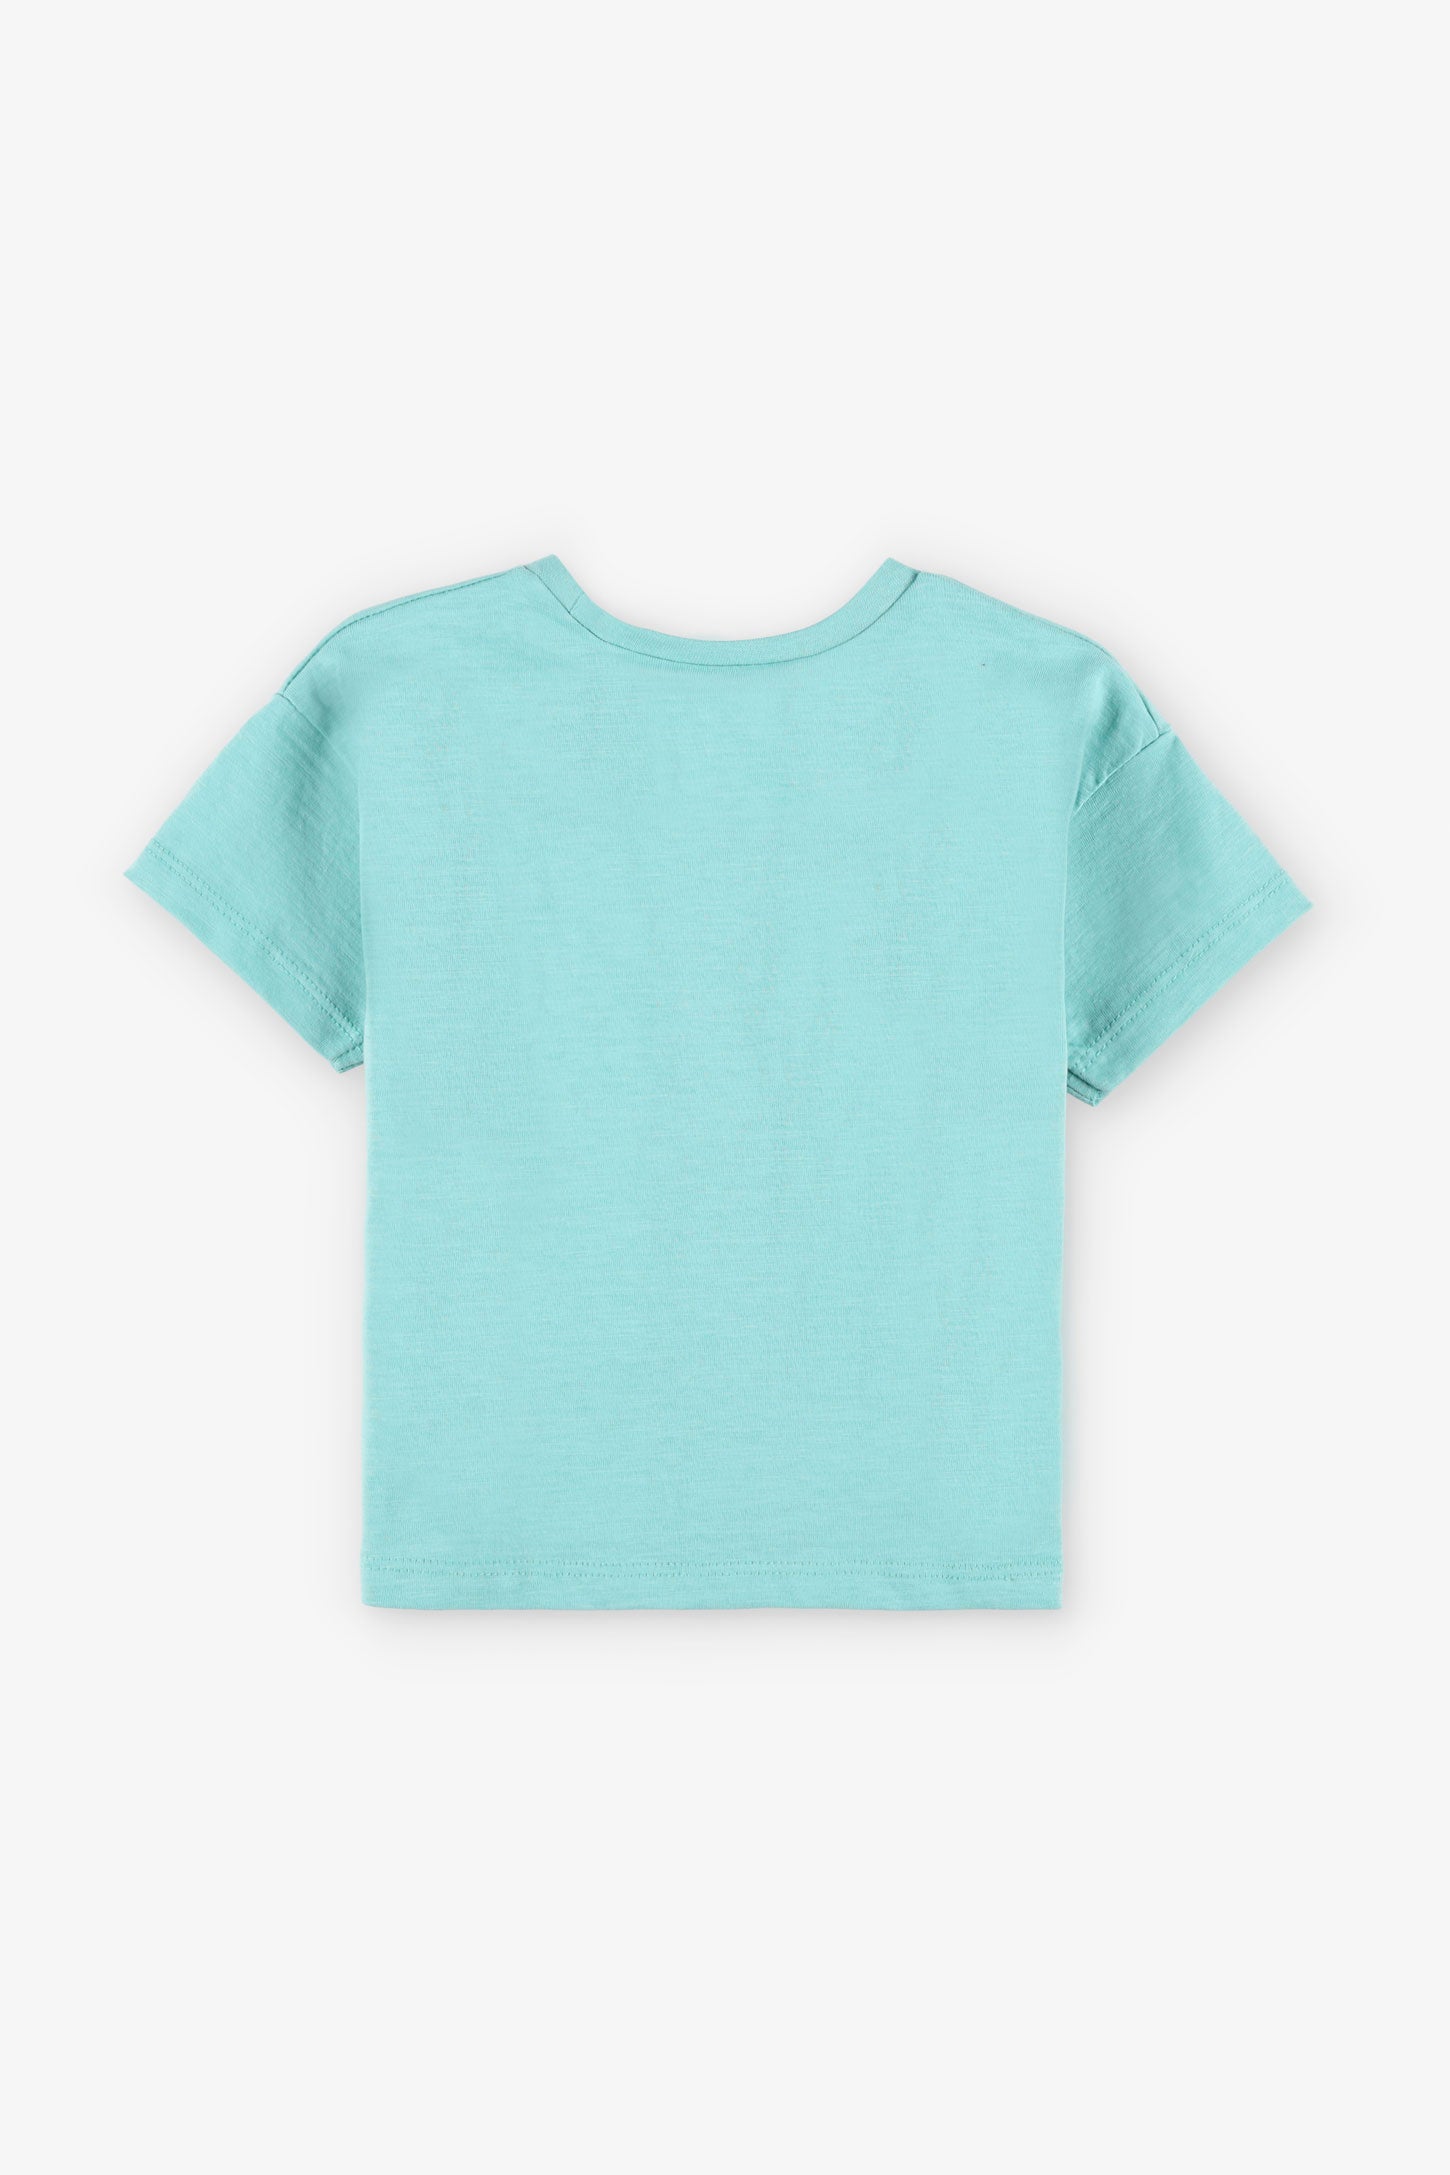 T-shirt coupe ample en coton, 2T-3T, 2/15$ - Bébé garçon && TURQUOISE